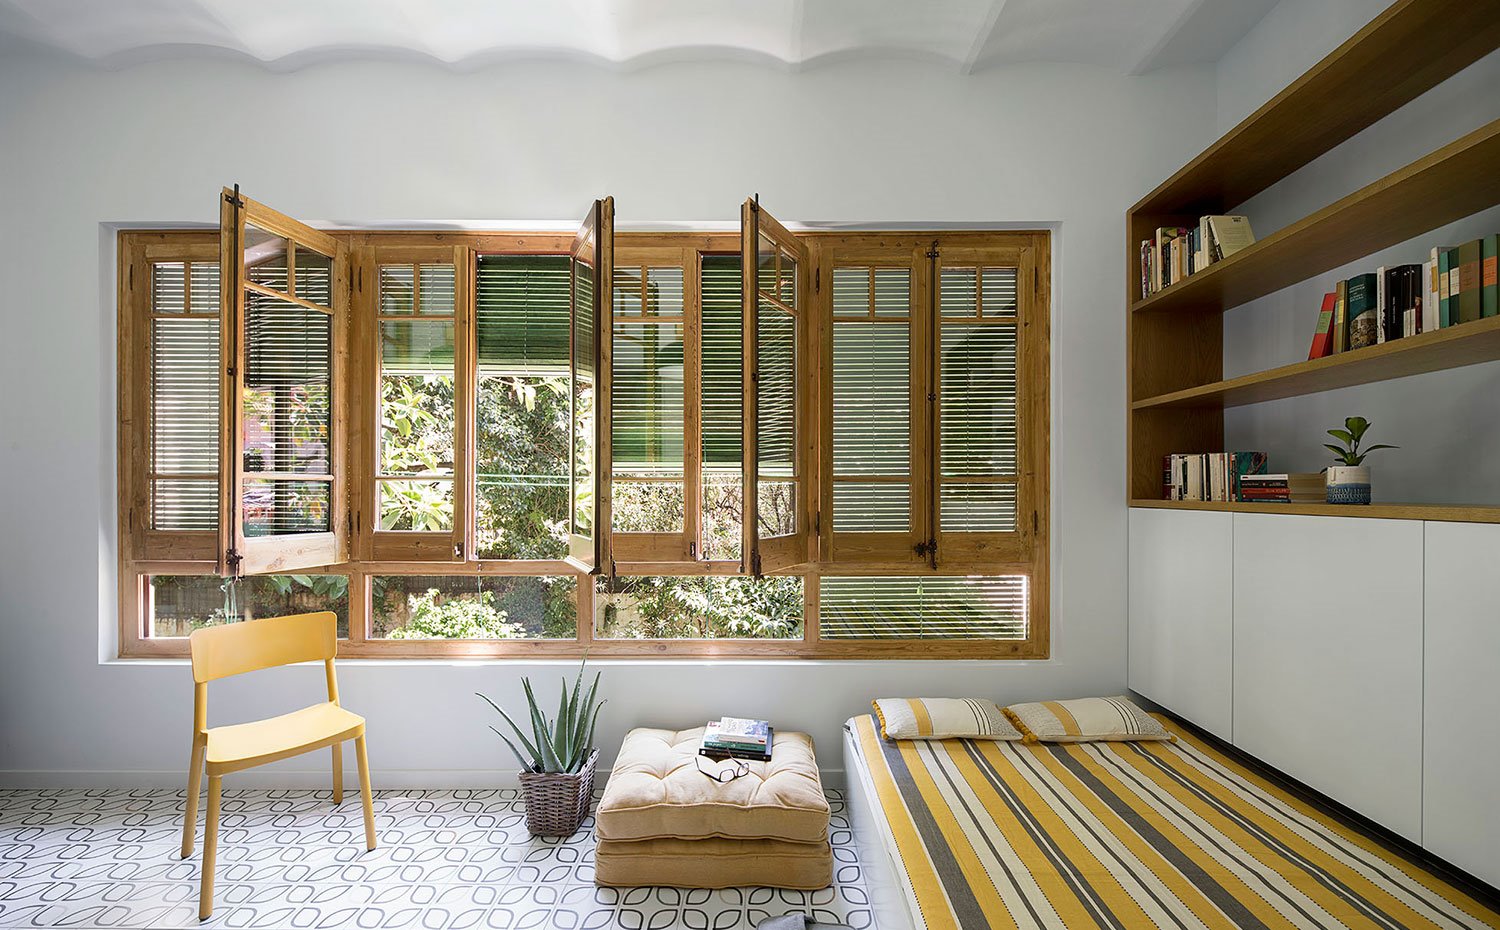 Zona lectura, puf y silla amarilla, mueble almacenaje en blanco y madera, ventanas con perfilería de madera natural a exterior